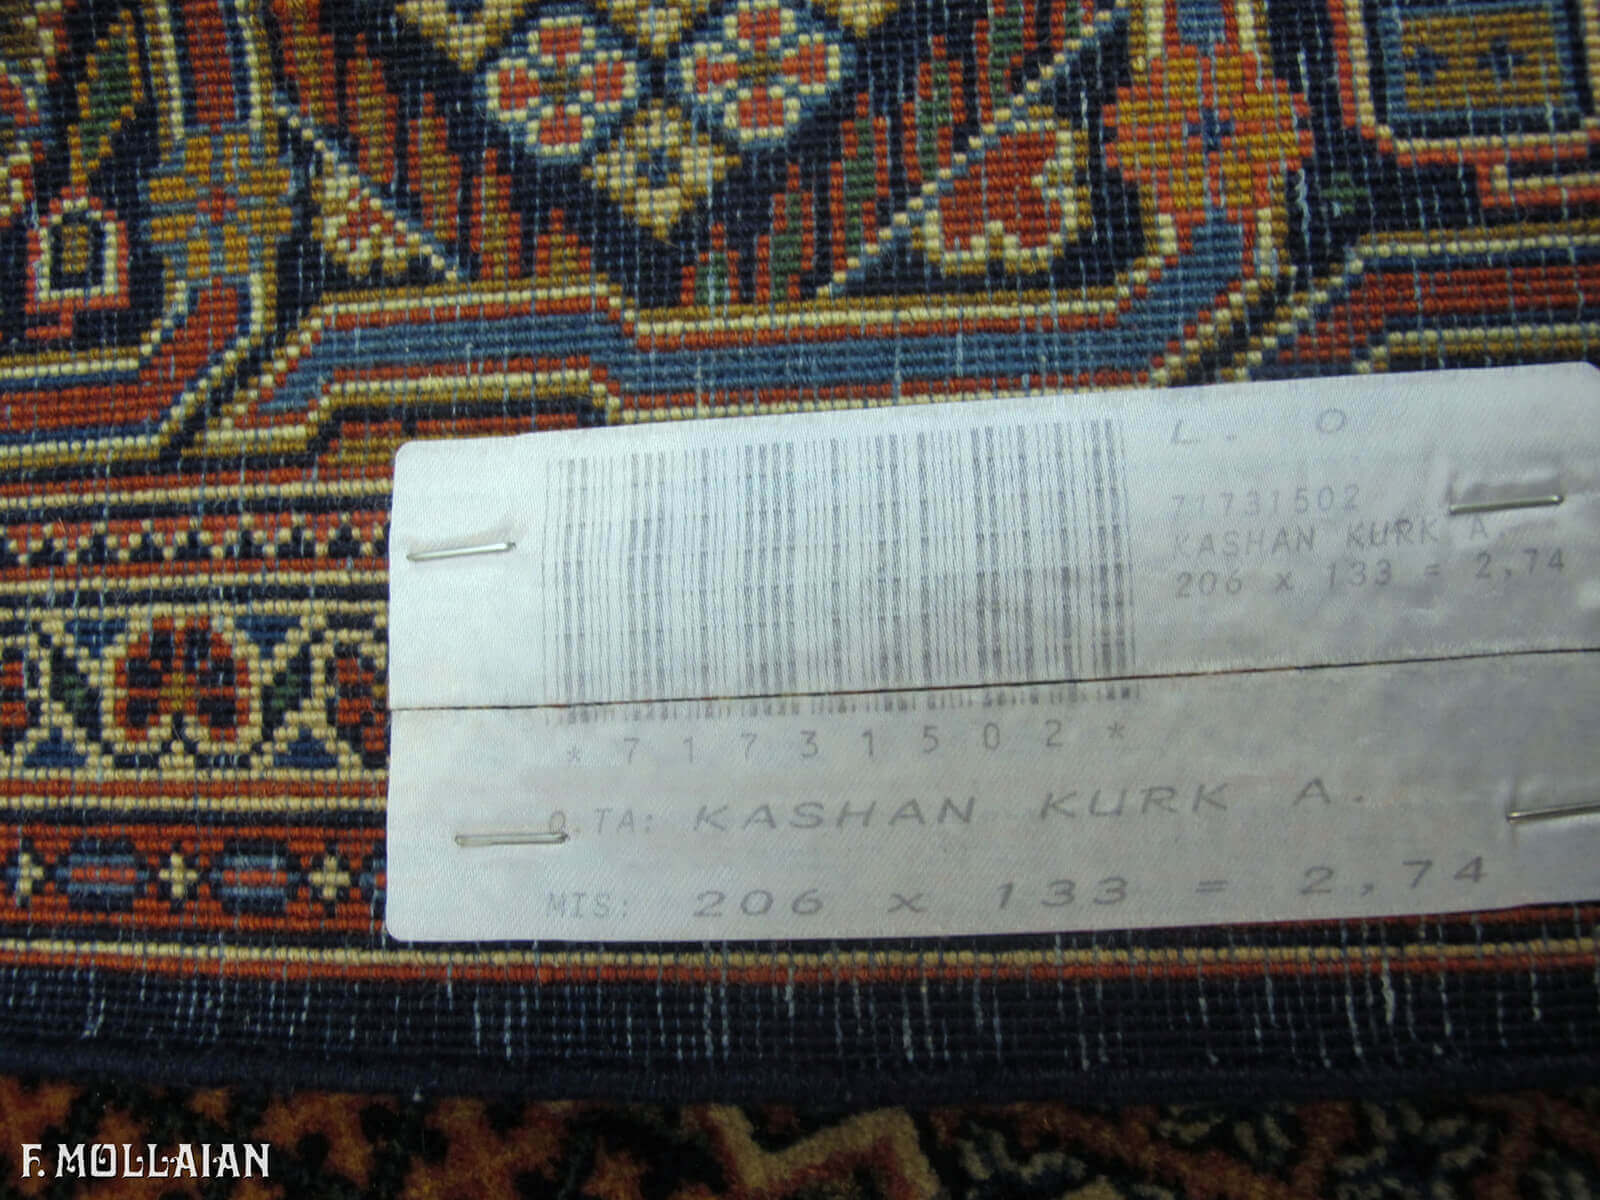 Teppich Persischer Antiker Kashan Kurk n°:71731502